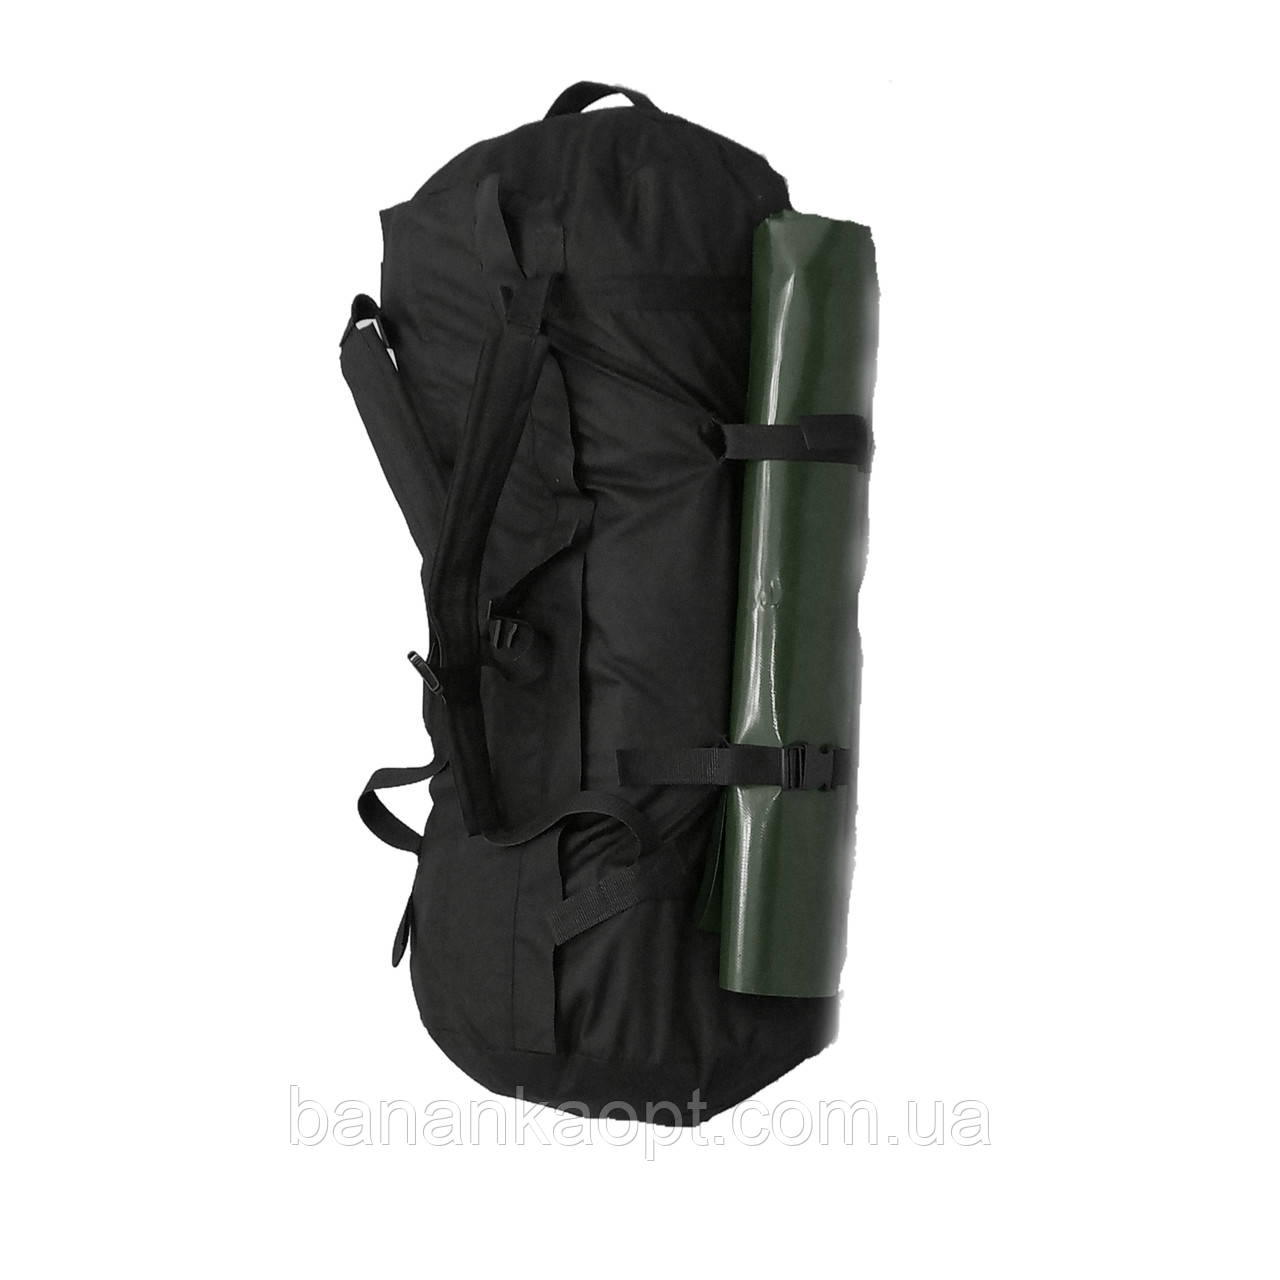 Баул великий армійський для туризму сумка рюкзак тактичний чорний 120 л Оксфорд 600d водонепромокальна